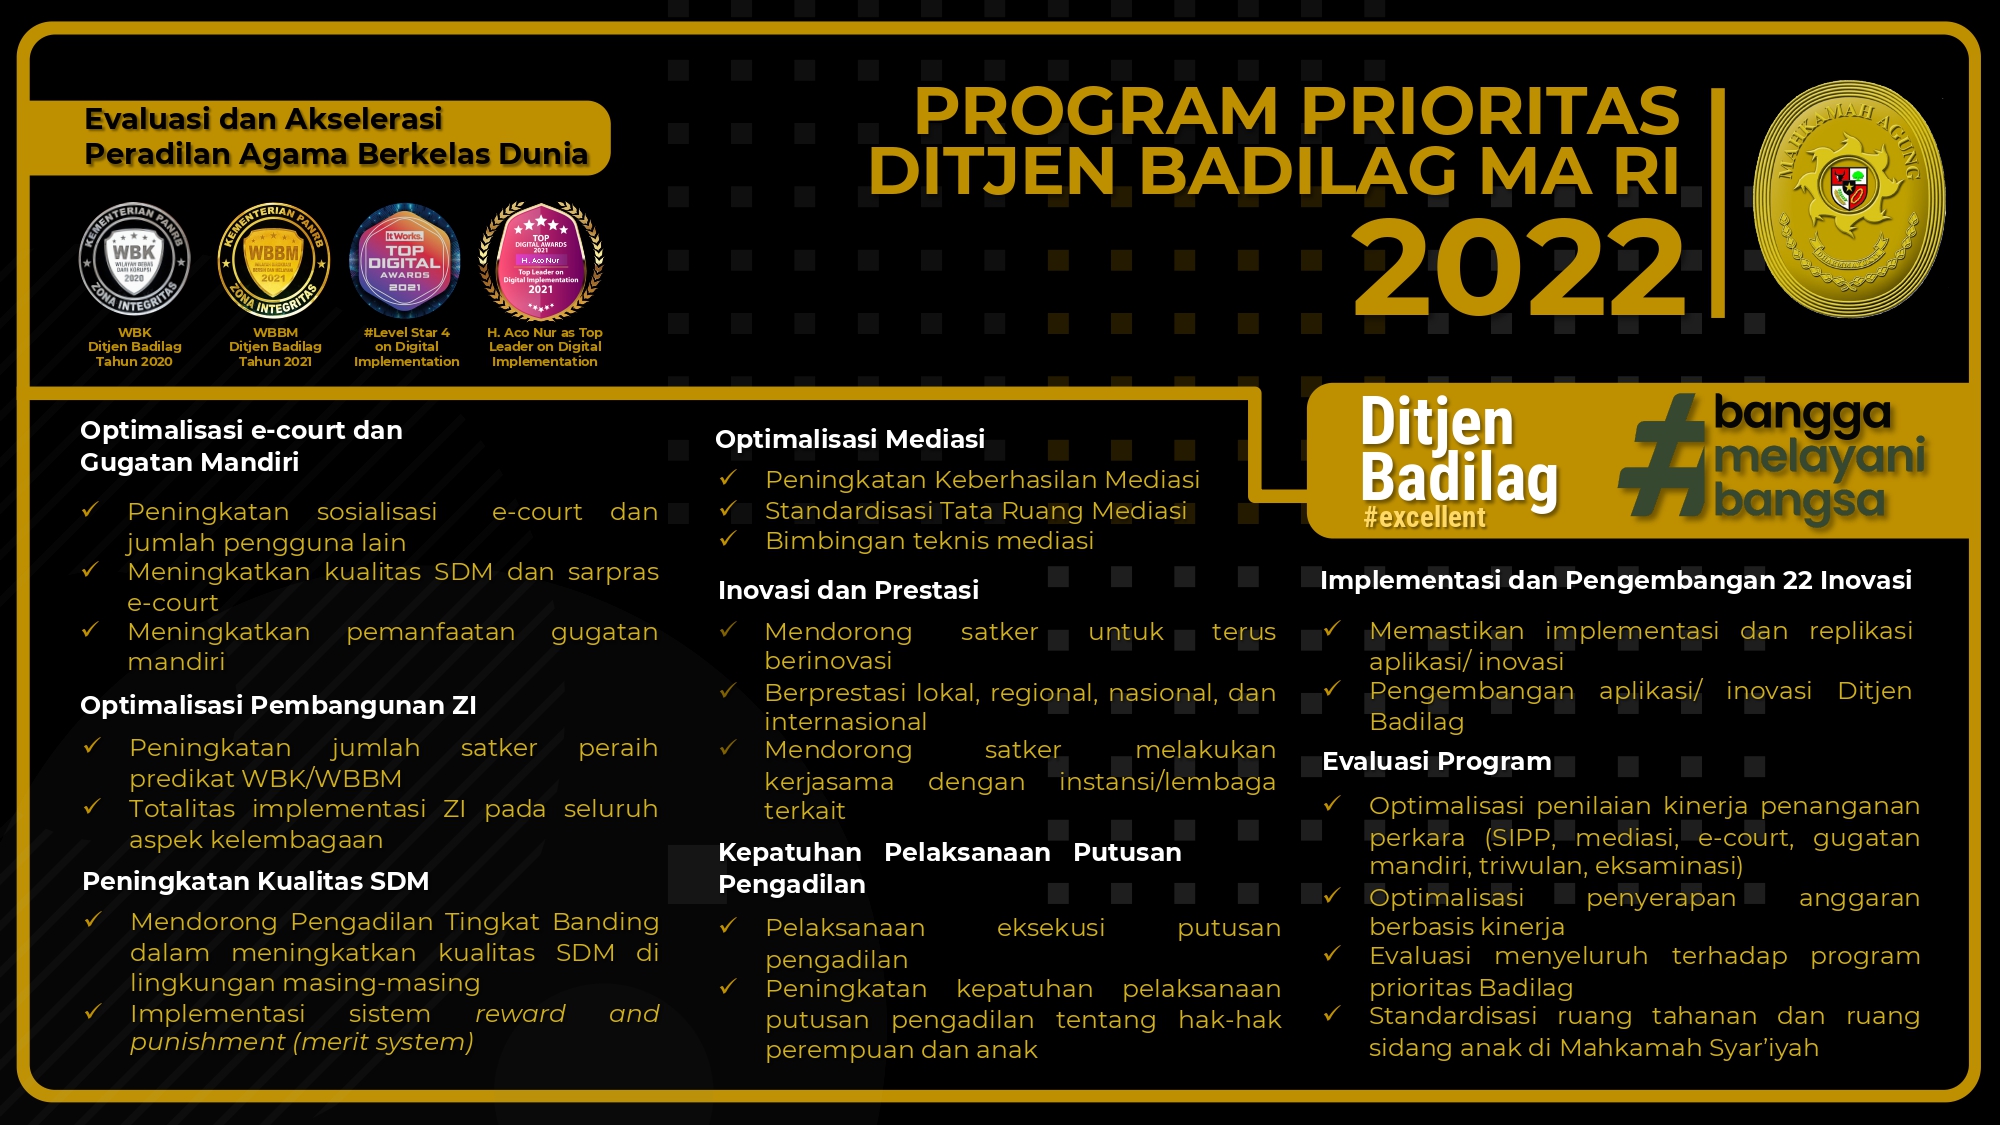 Program Prioritas Ditjen Badilag MA RI 2022